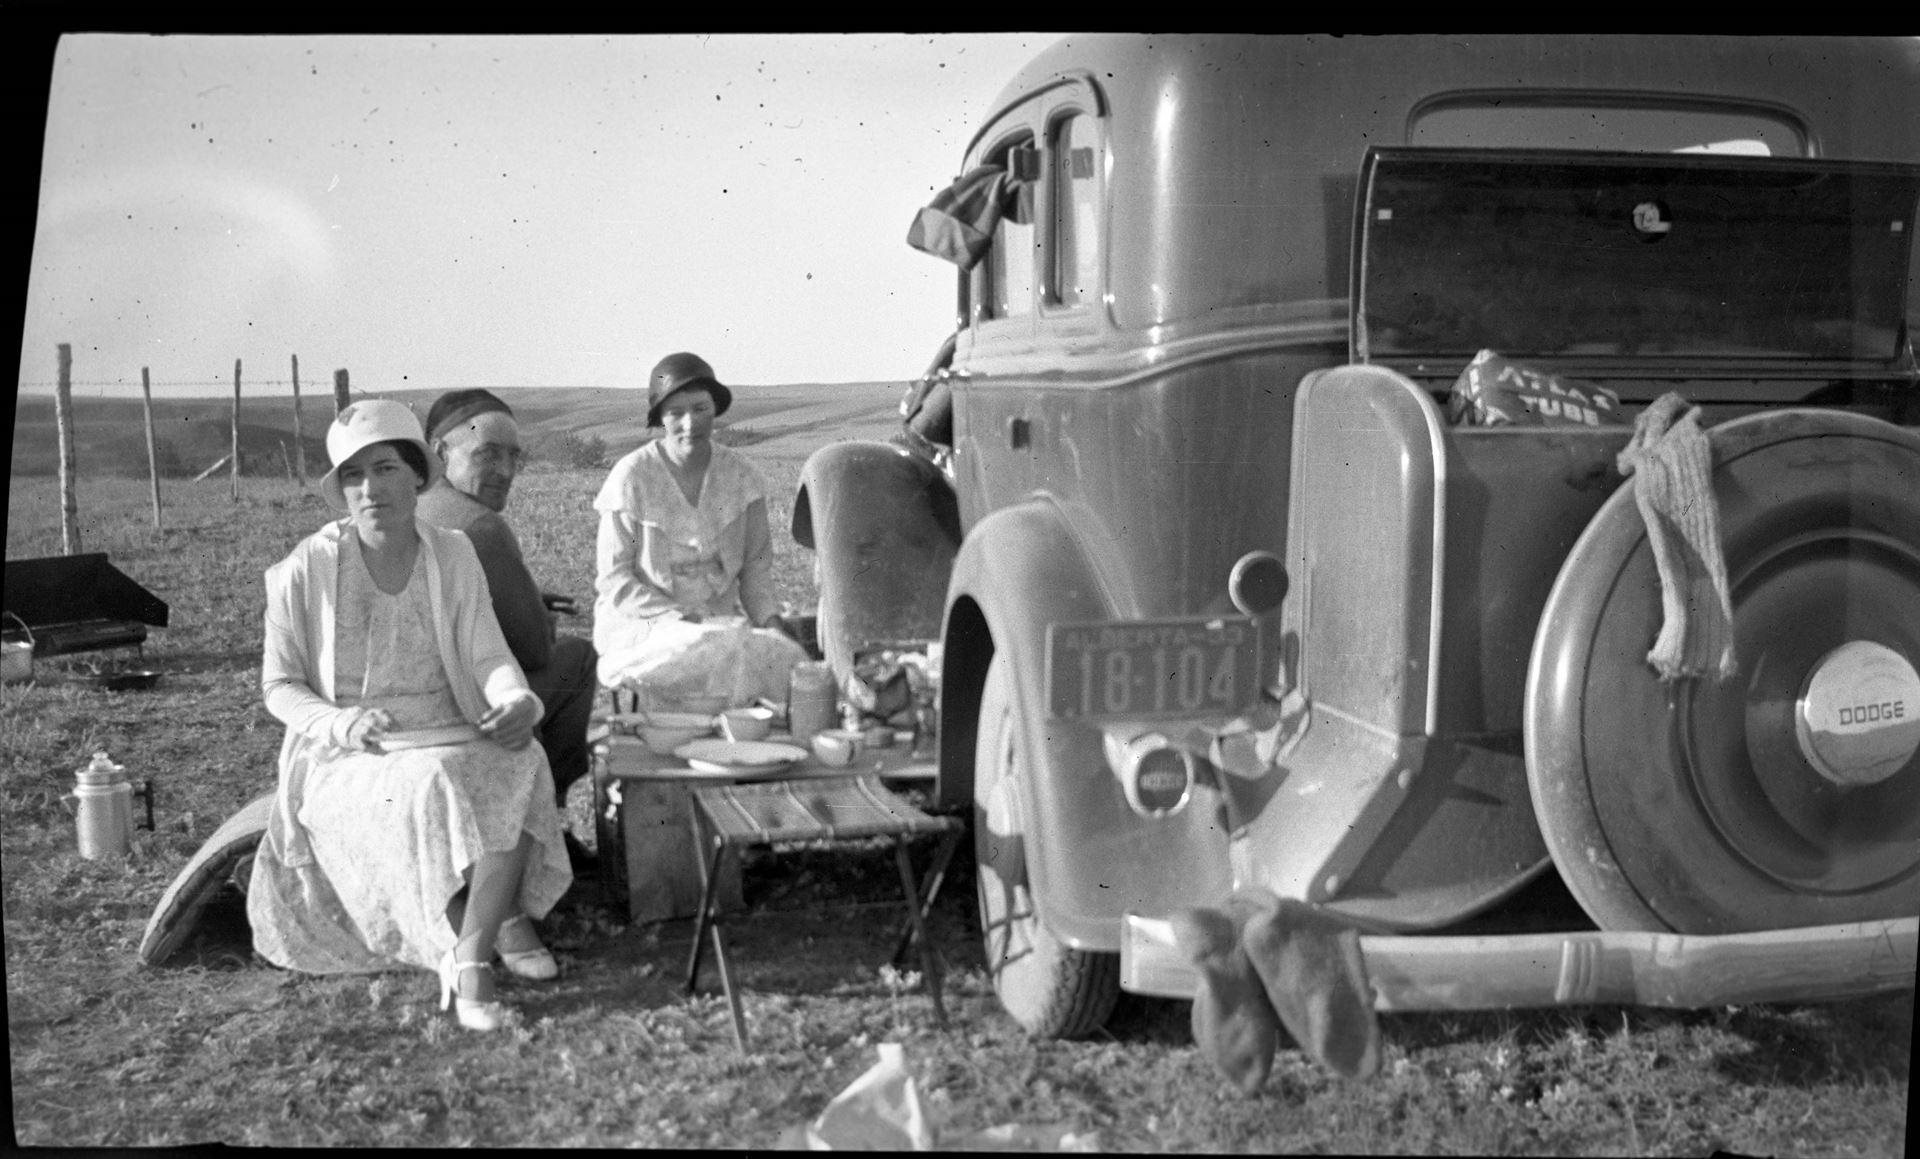 Group sitting near car having picnic